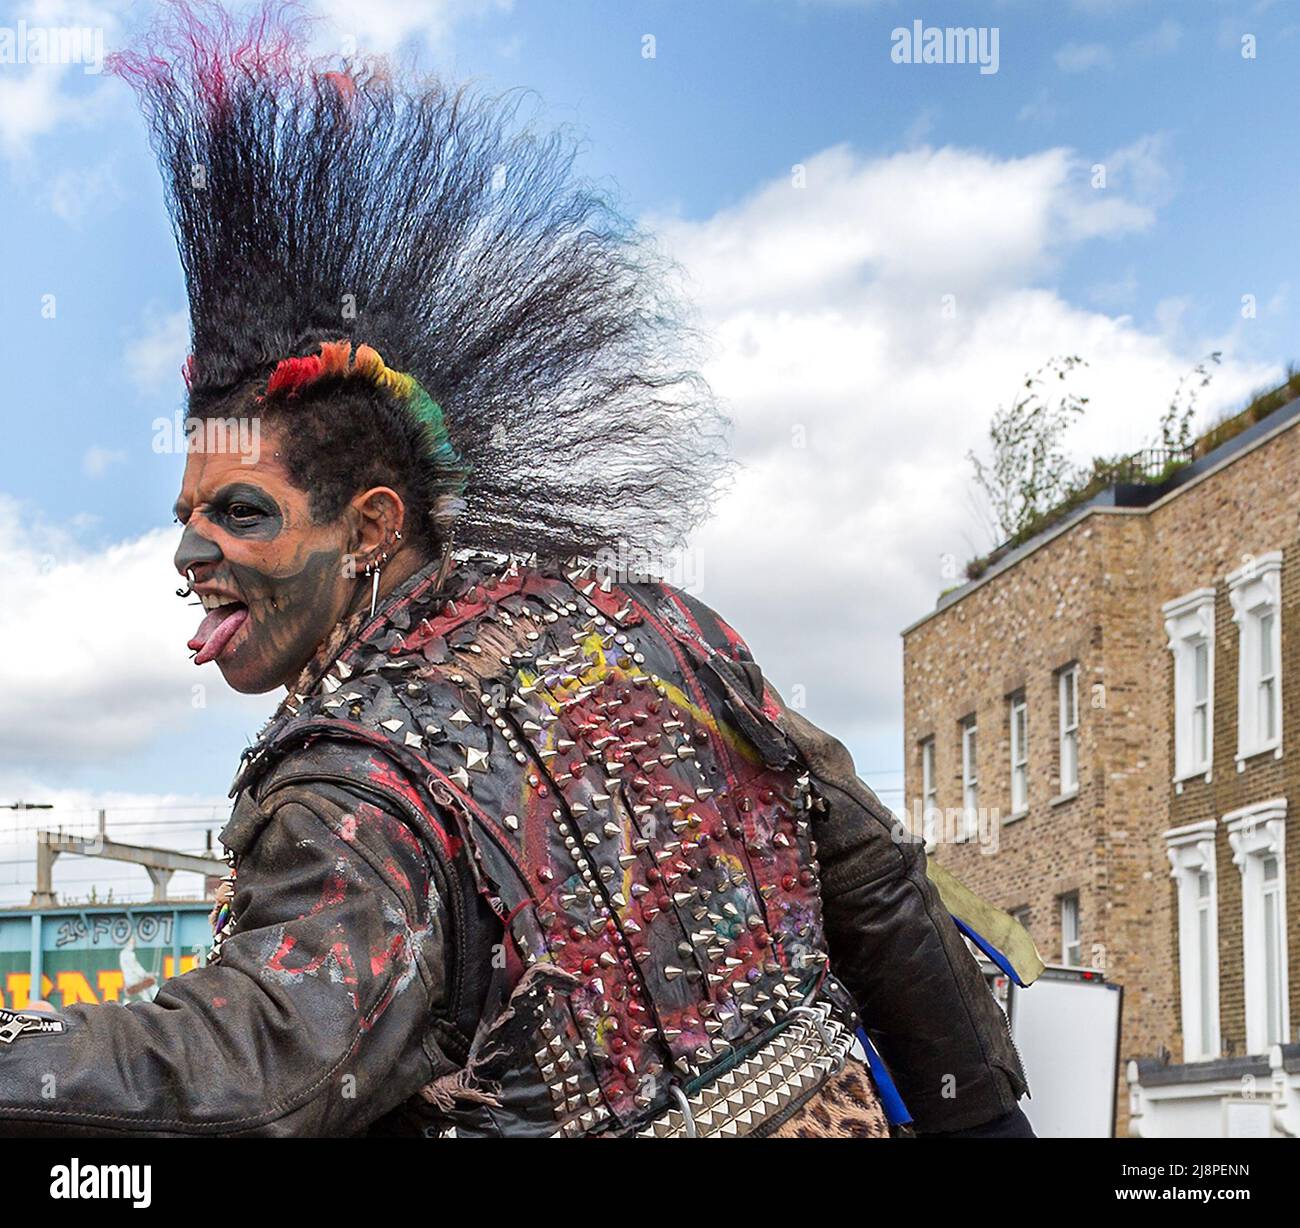 Ein Punk-Rocker mit einer fantastischen Mohawk-Frisur, gespaltener Zunge, Gesichts-Tattoos und Piercings schlägt eine wütende Pose auf der Straße. Stockfoto